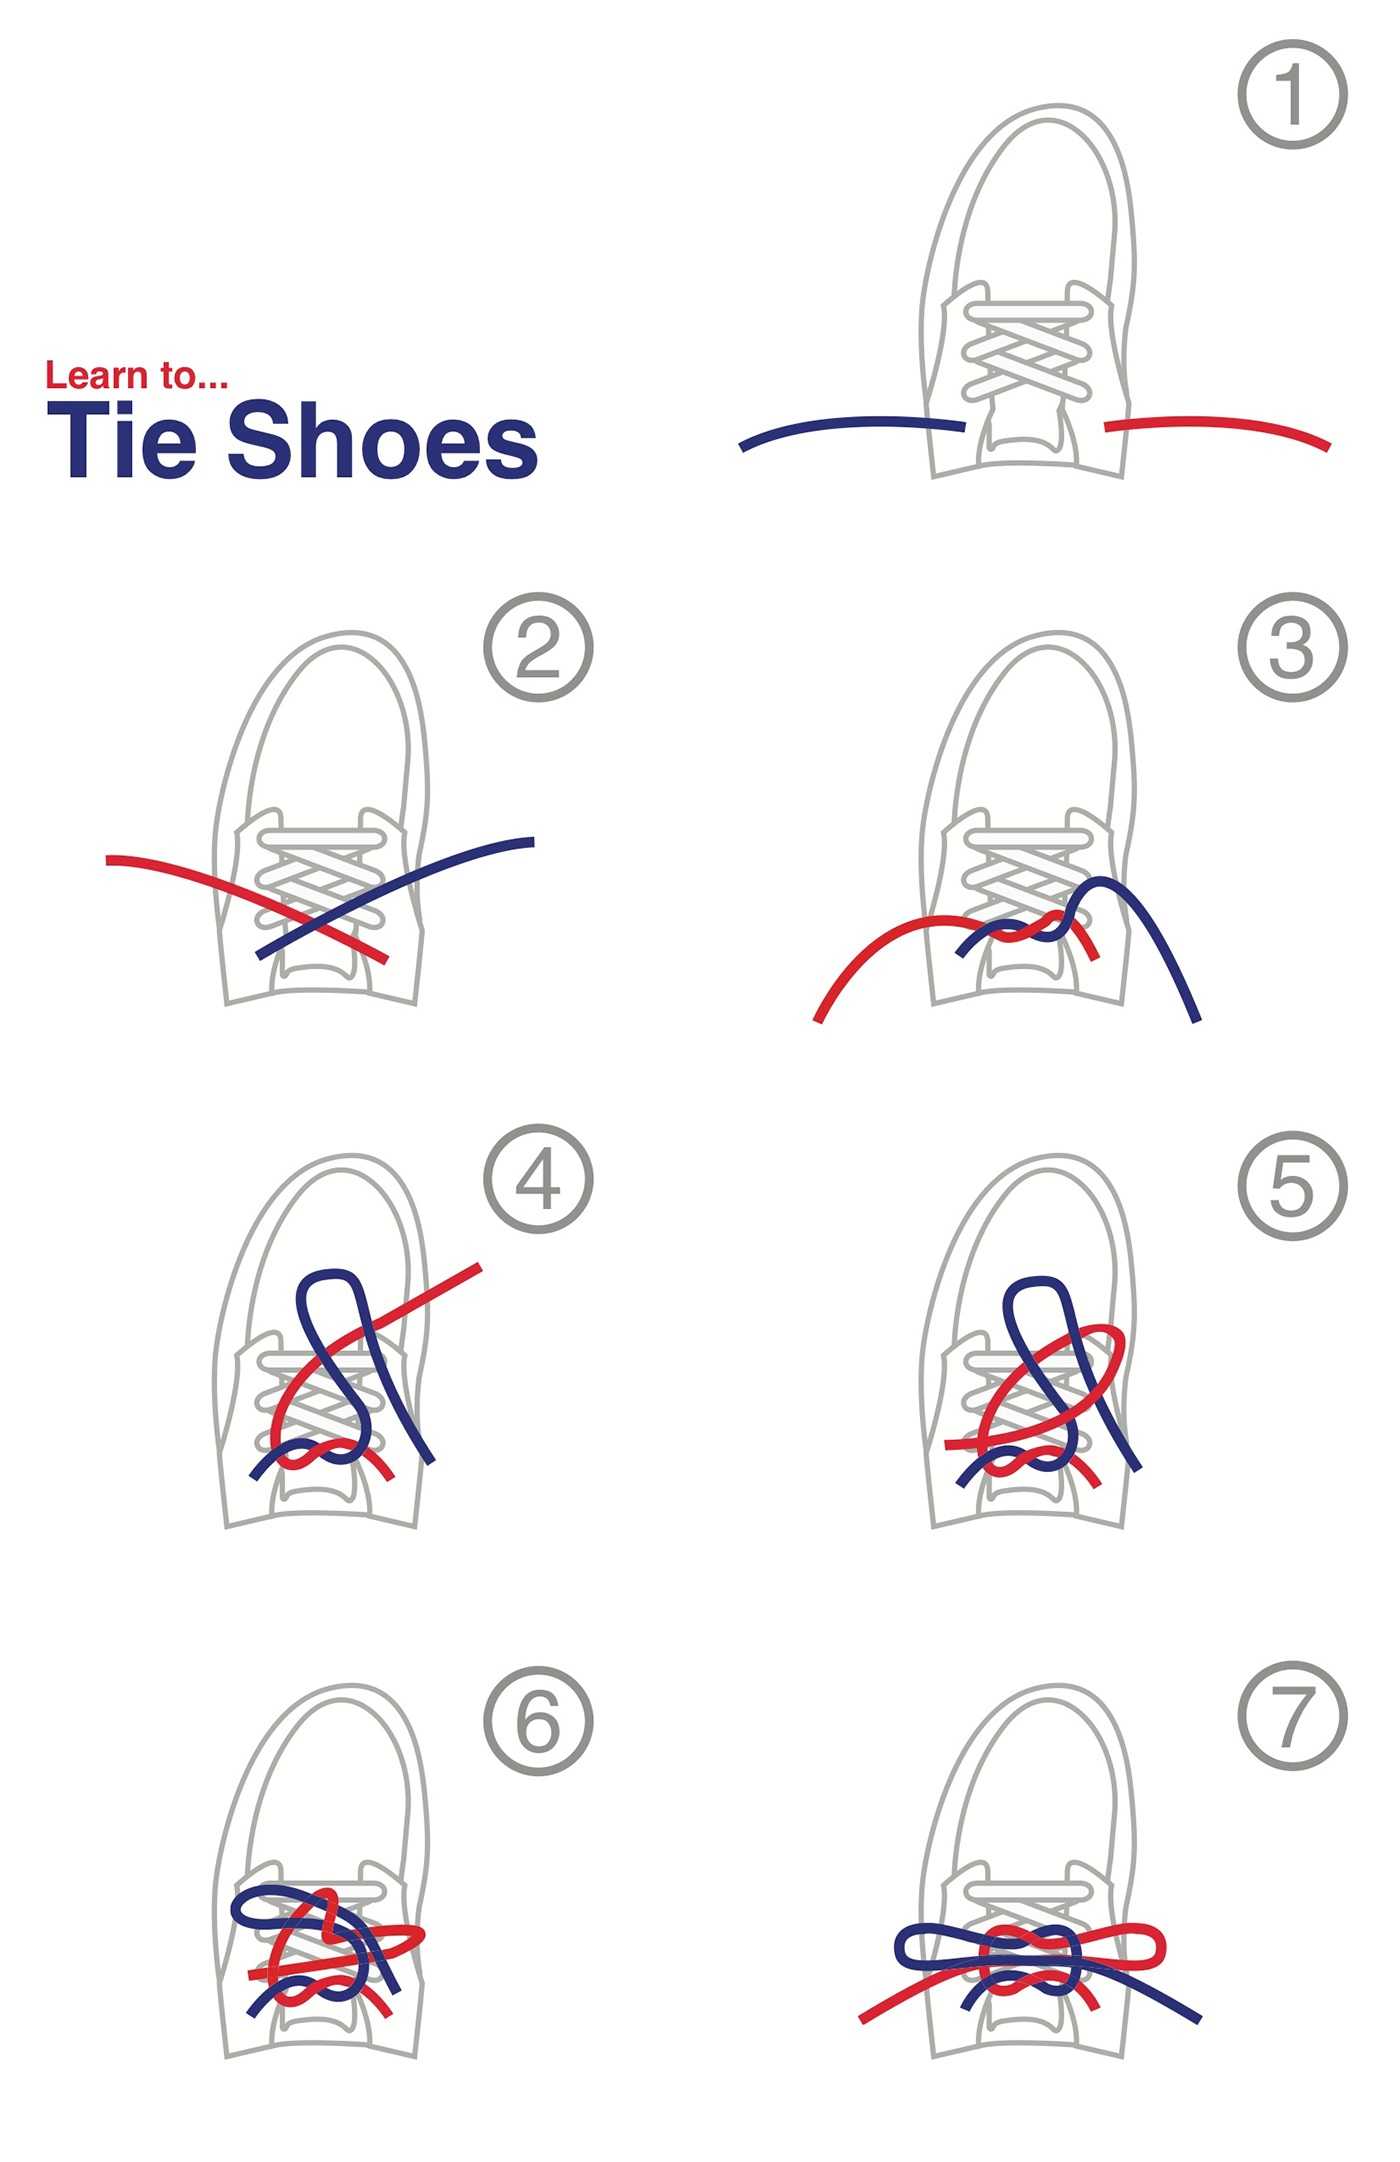 Как завязывать шнурки поэтапно. Как завязать шнурки. Как научиться завязывать шнурки. Как научить ребенка завязывать шнурки. Схема завязывания шнурков.